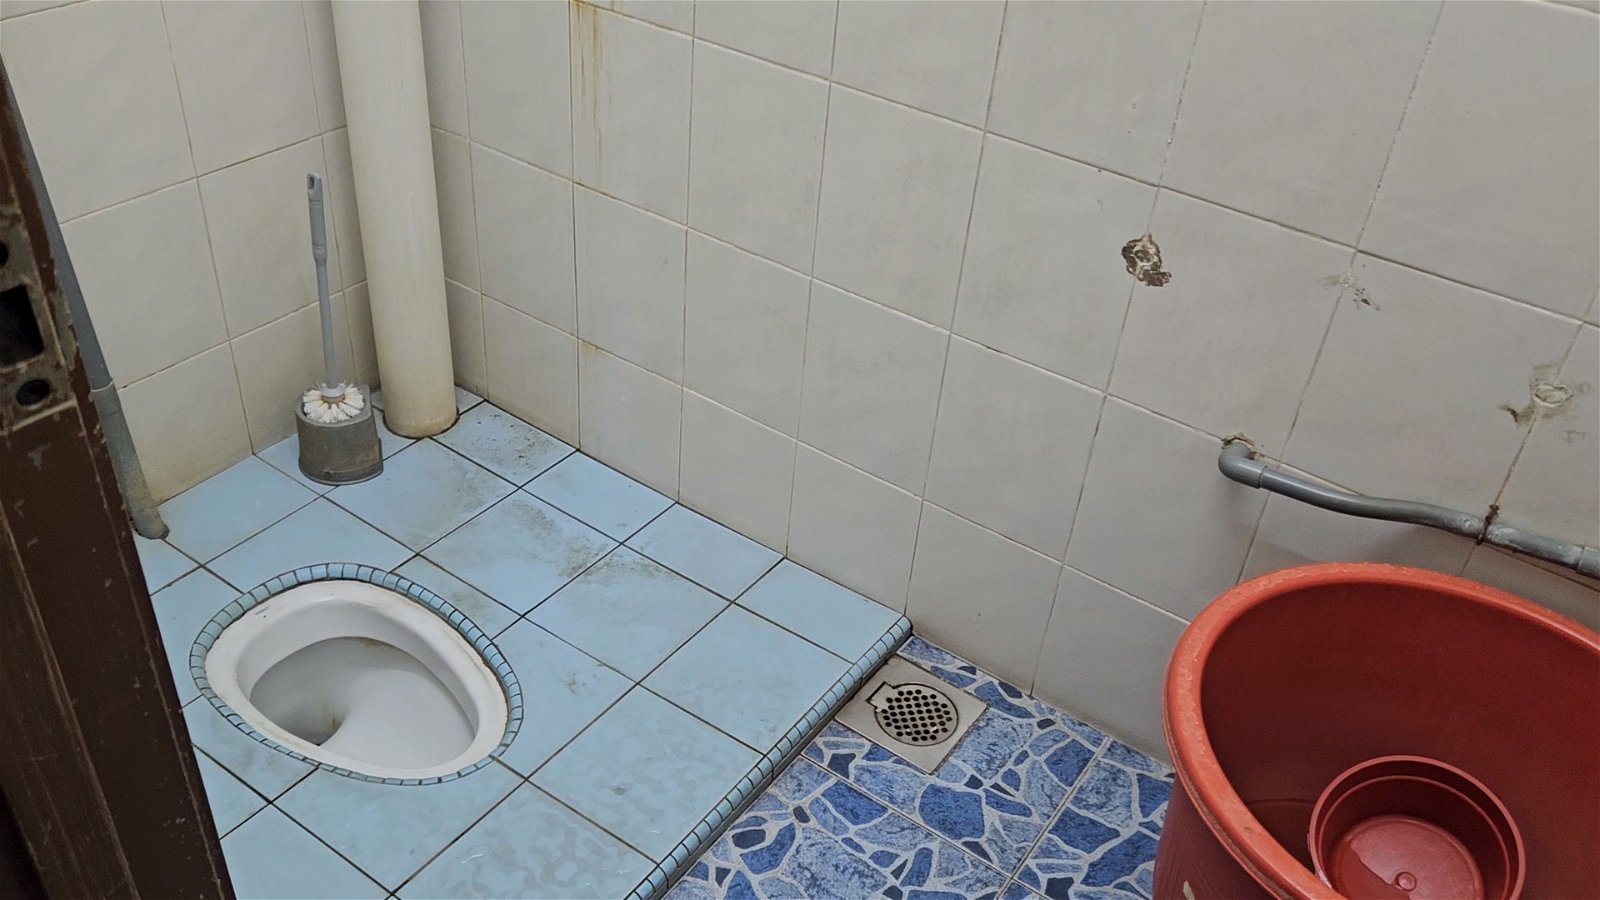 谢来成的住家厕所是蹲式马桶，需改造成坐式马桶，同时增设无障碍设施，方便他如厕。